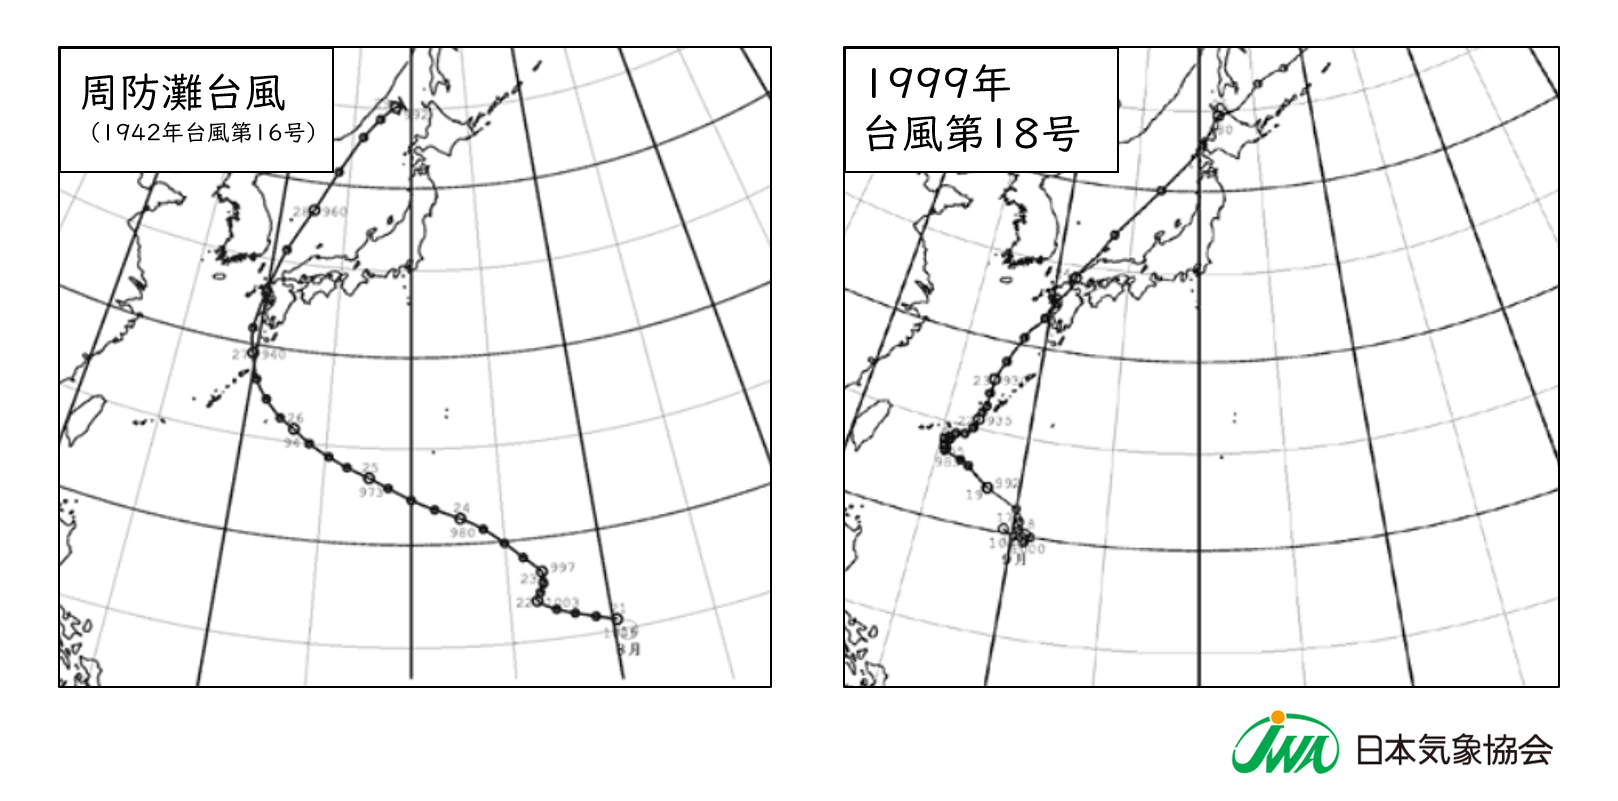 図３ 台風進路図（周防灘台風、1999年台風第18号）